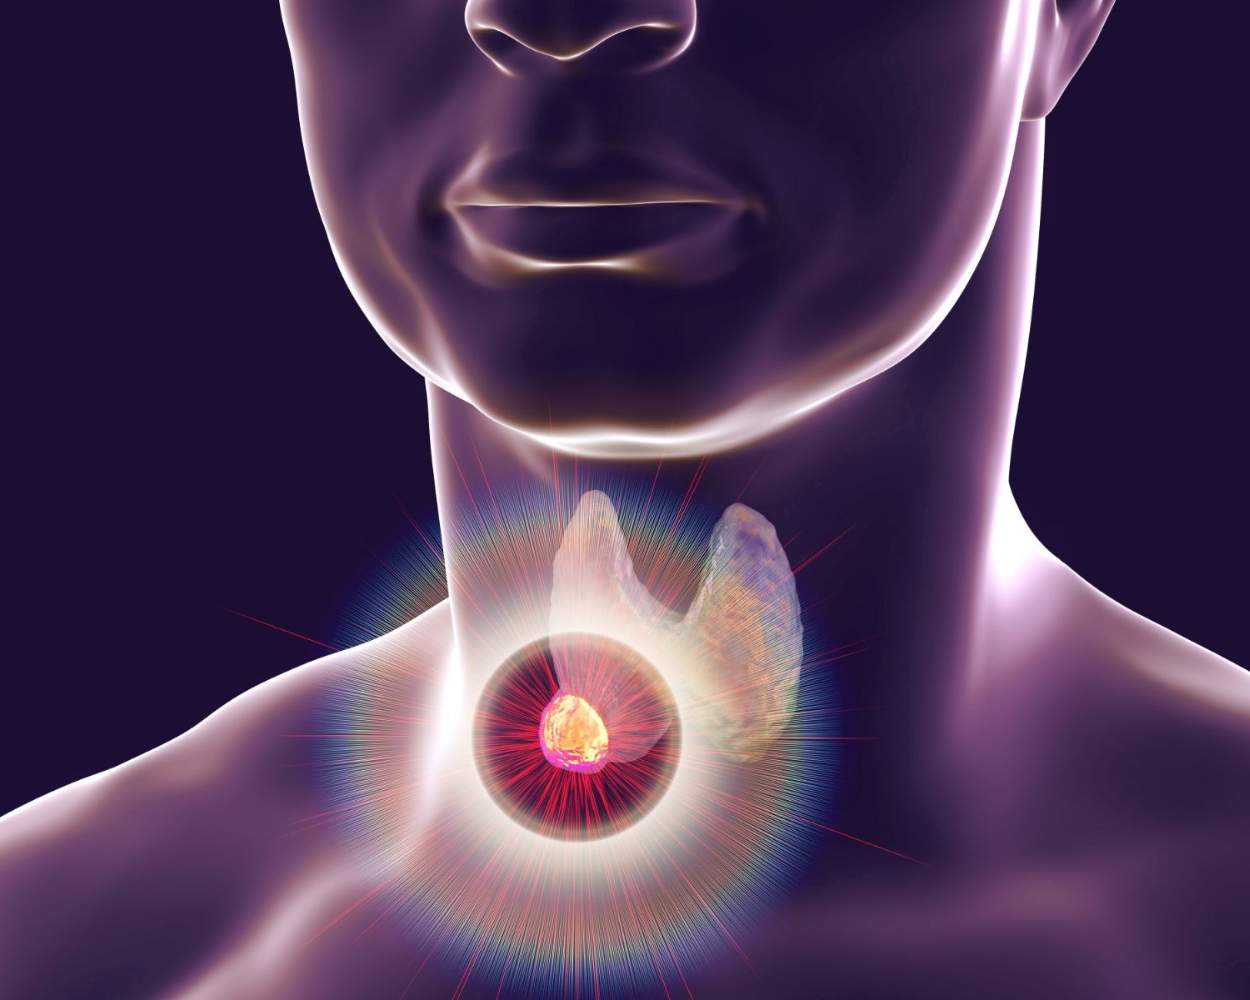 Thyroid & Parathyroid Surgery